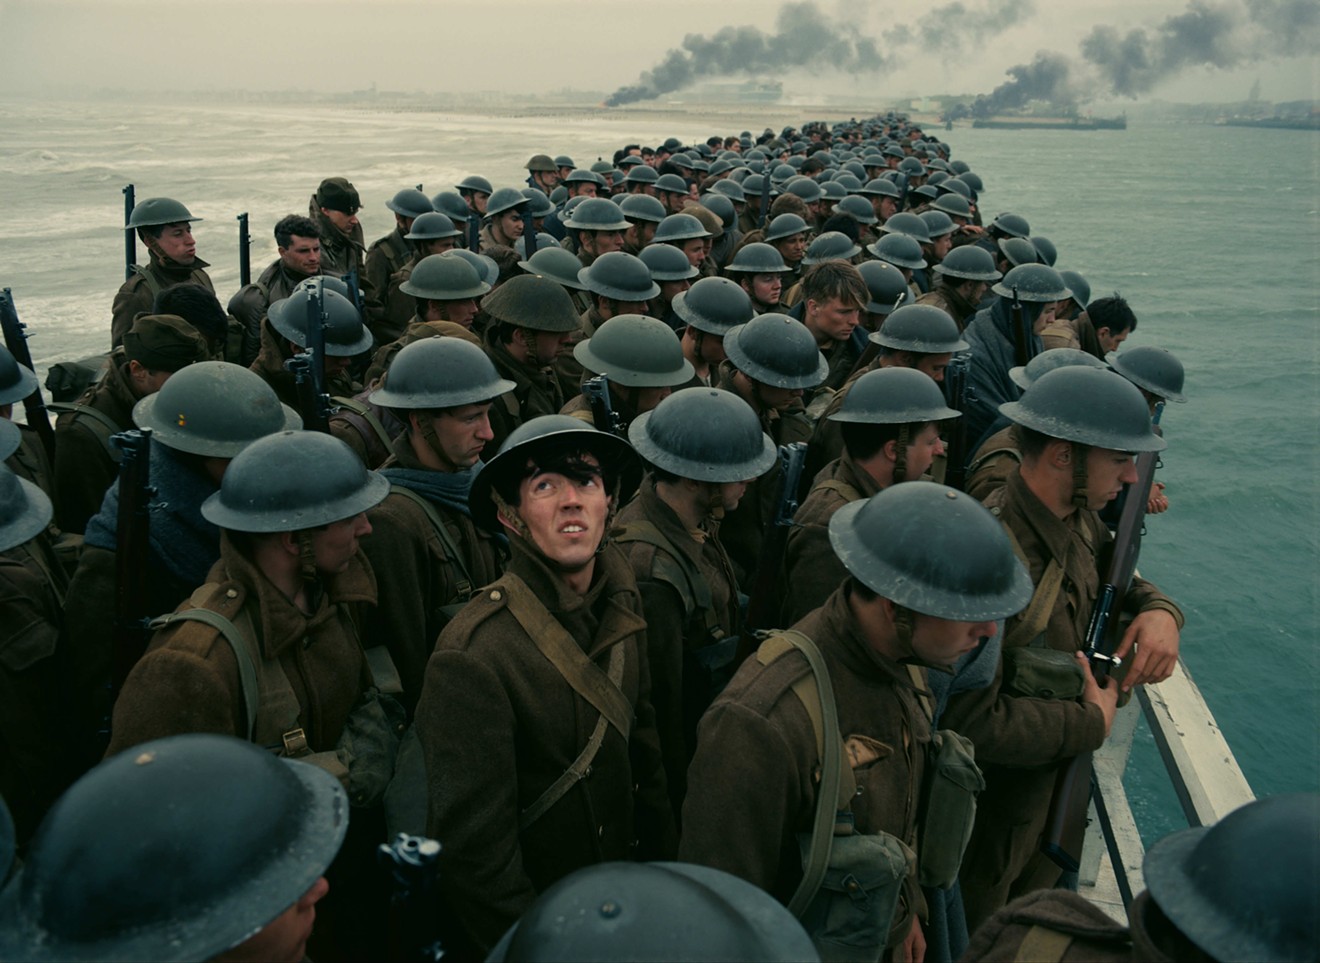 Nolan's Dunkirk, a triumph about defeat